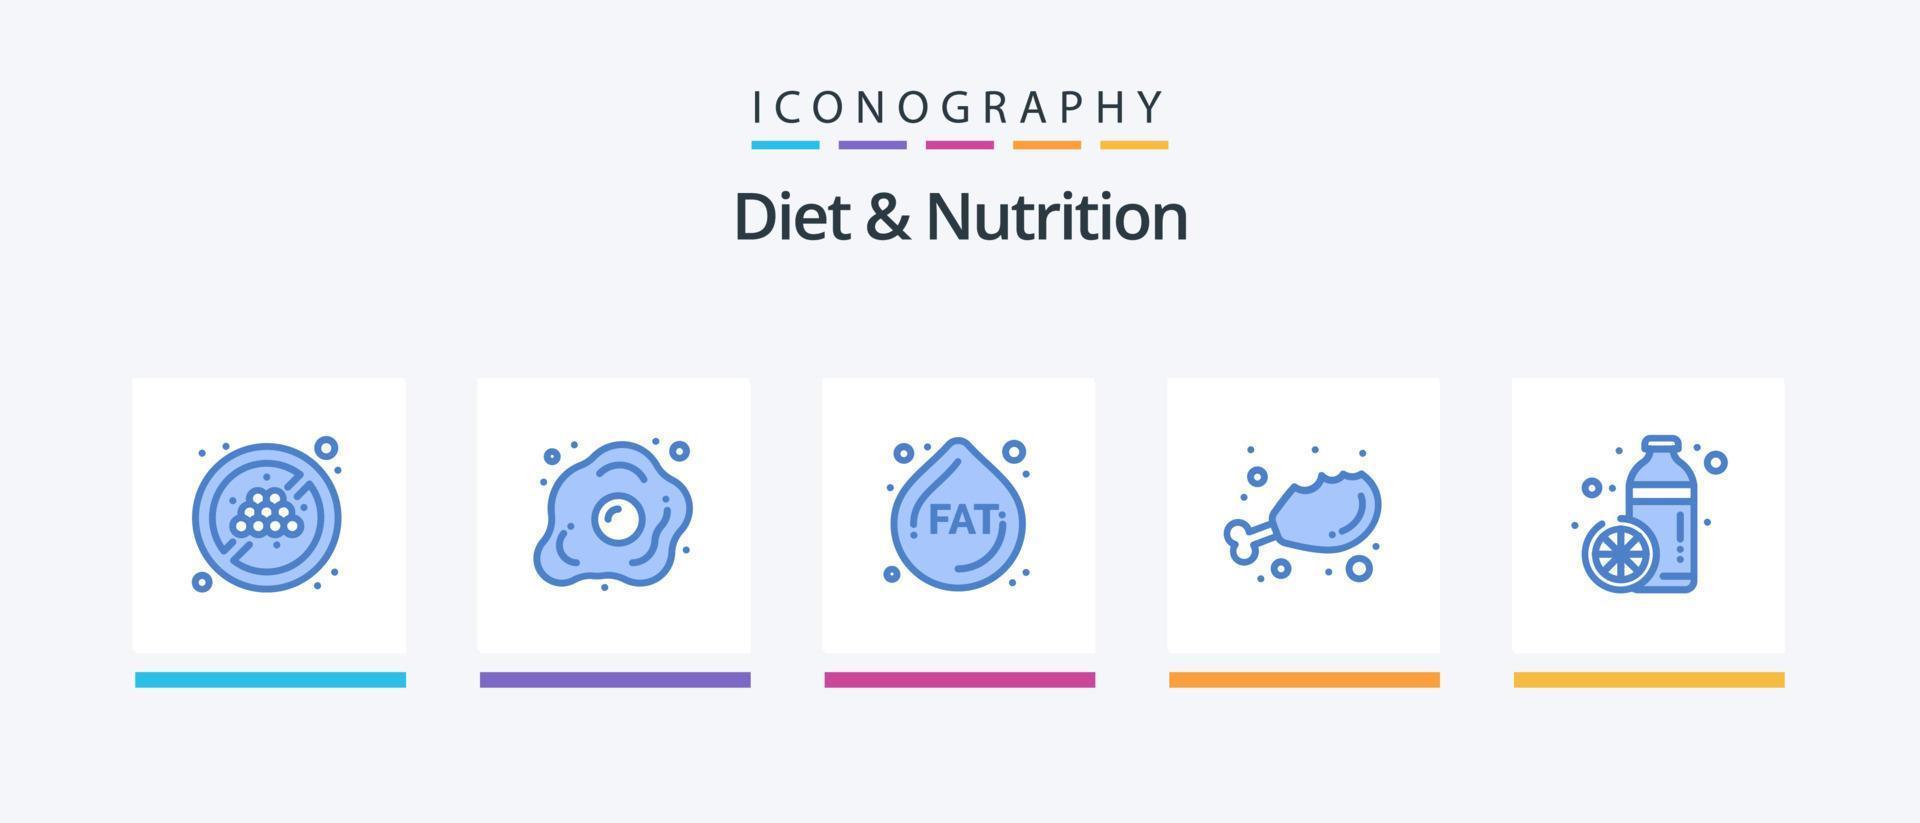 diät und ernährung blau 5 icon pack inklusive gesund. Flasche. fett. frisch. Diät. kreatives Symboldesign vektor